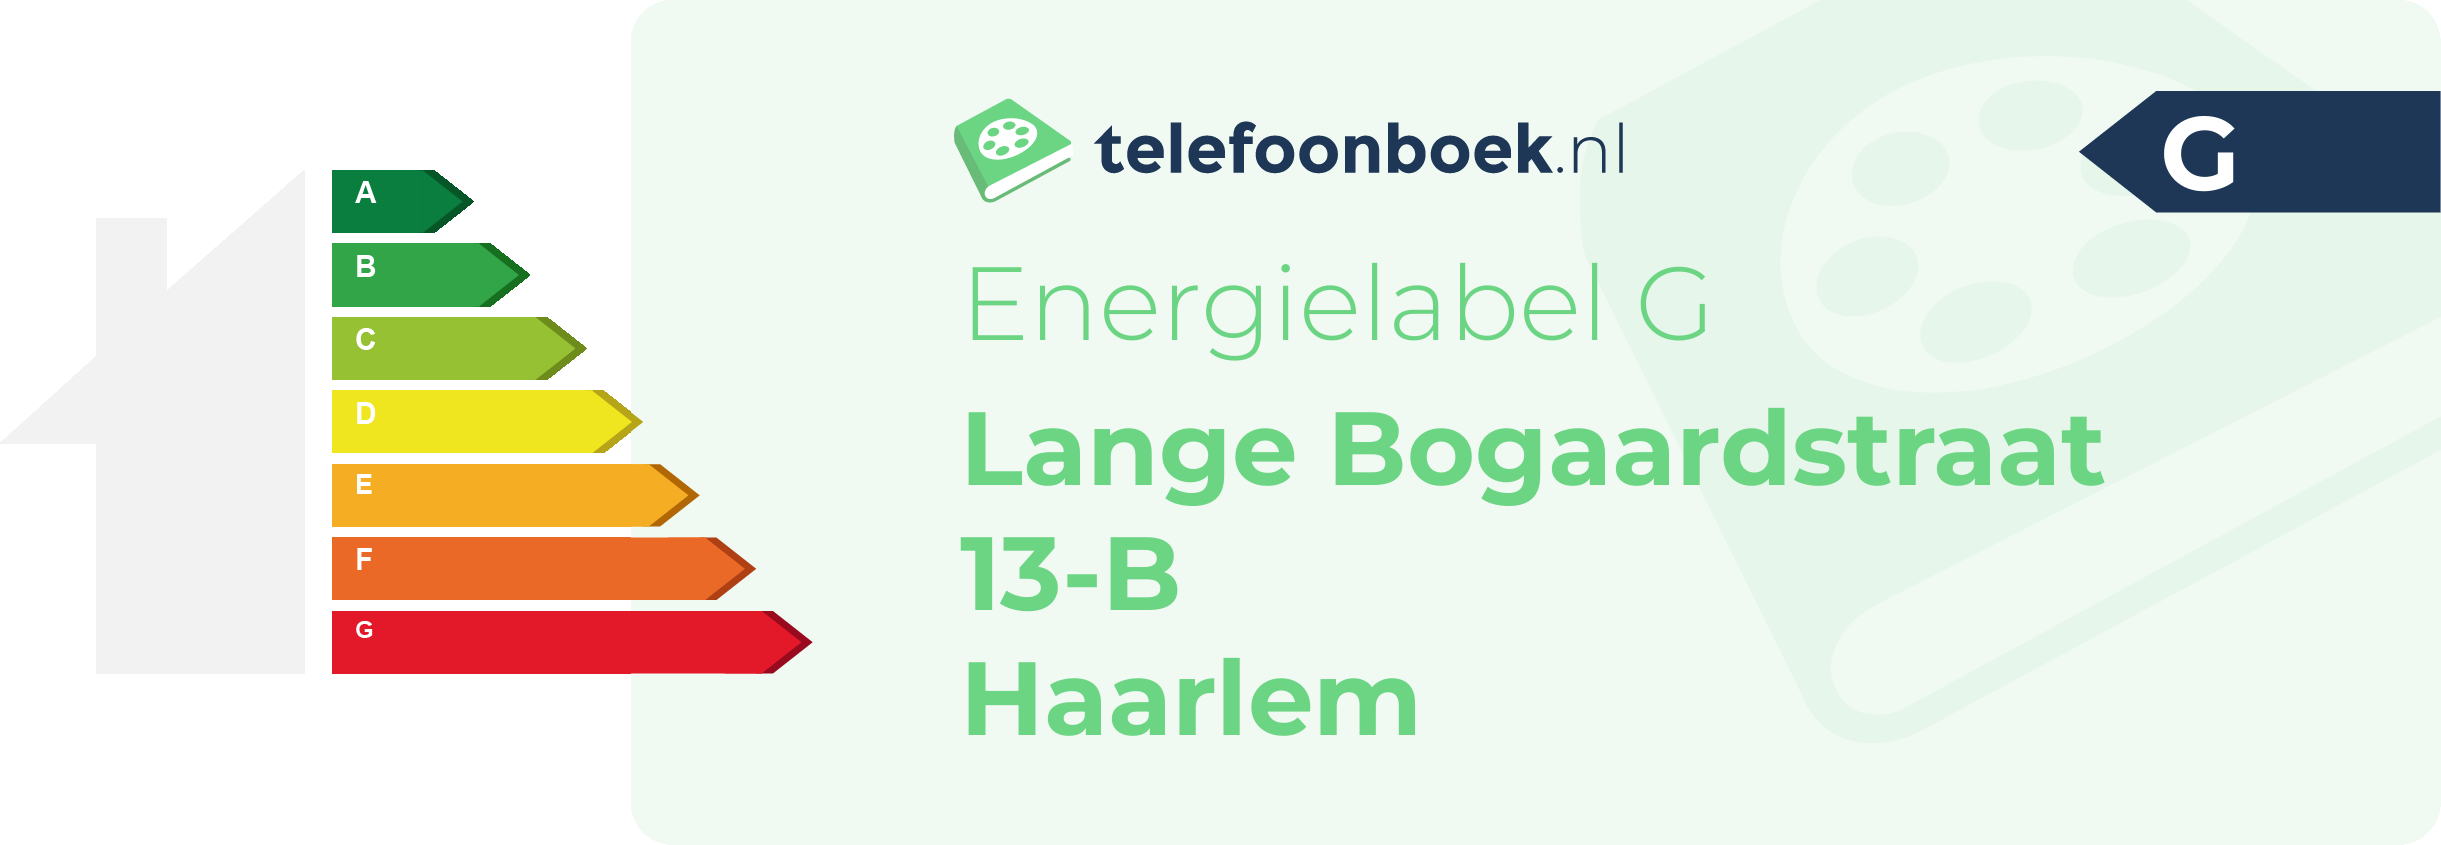 Energielabel Lange Bogaardstraat 13-B Haarlem